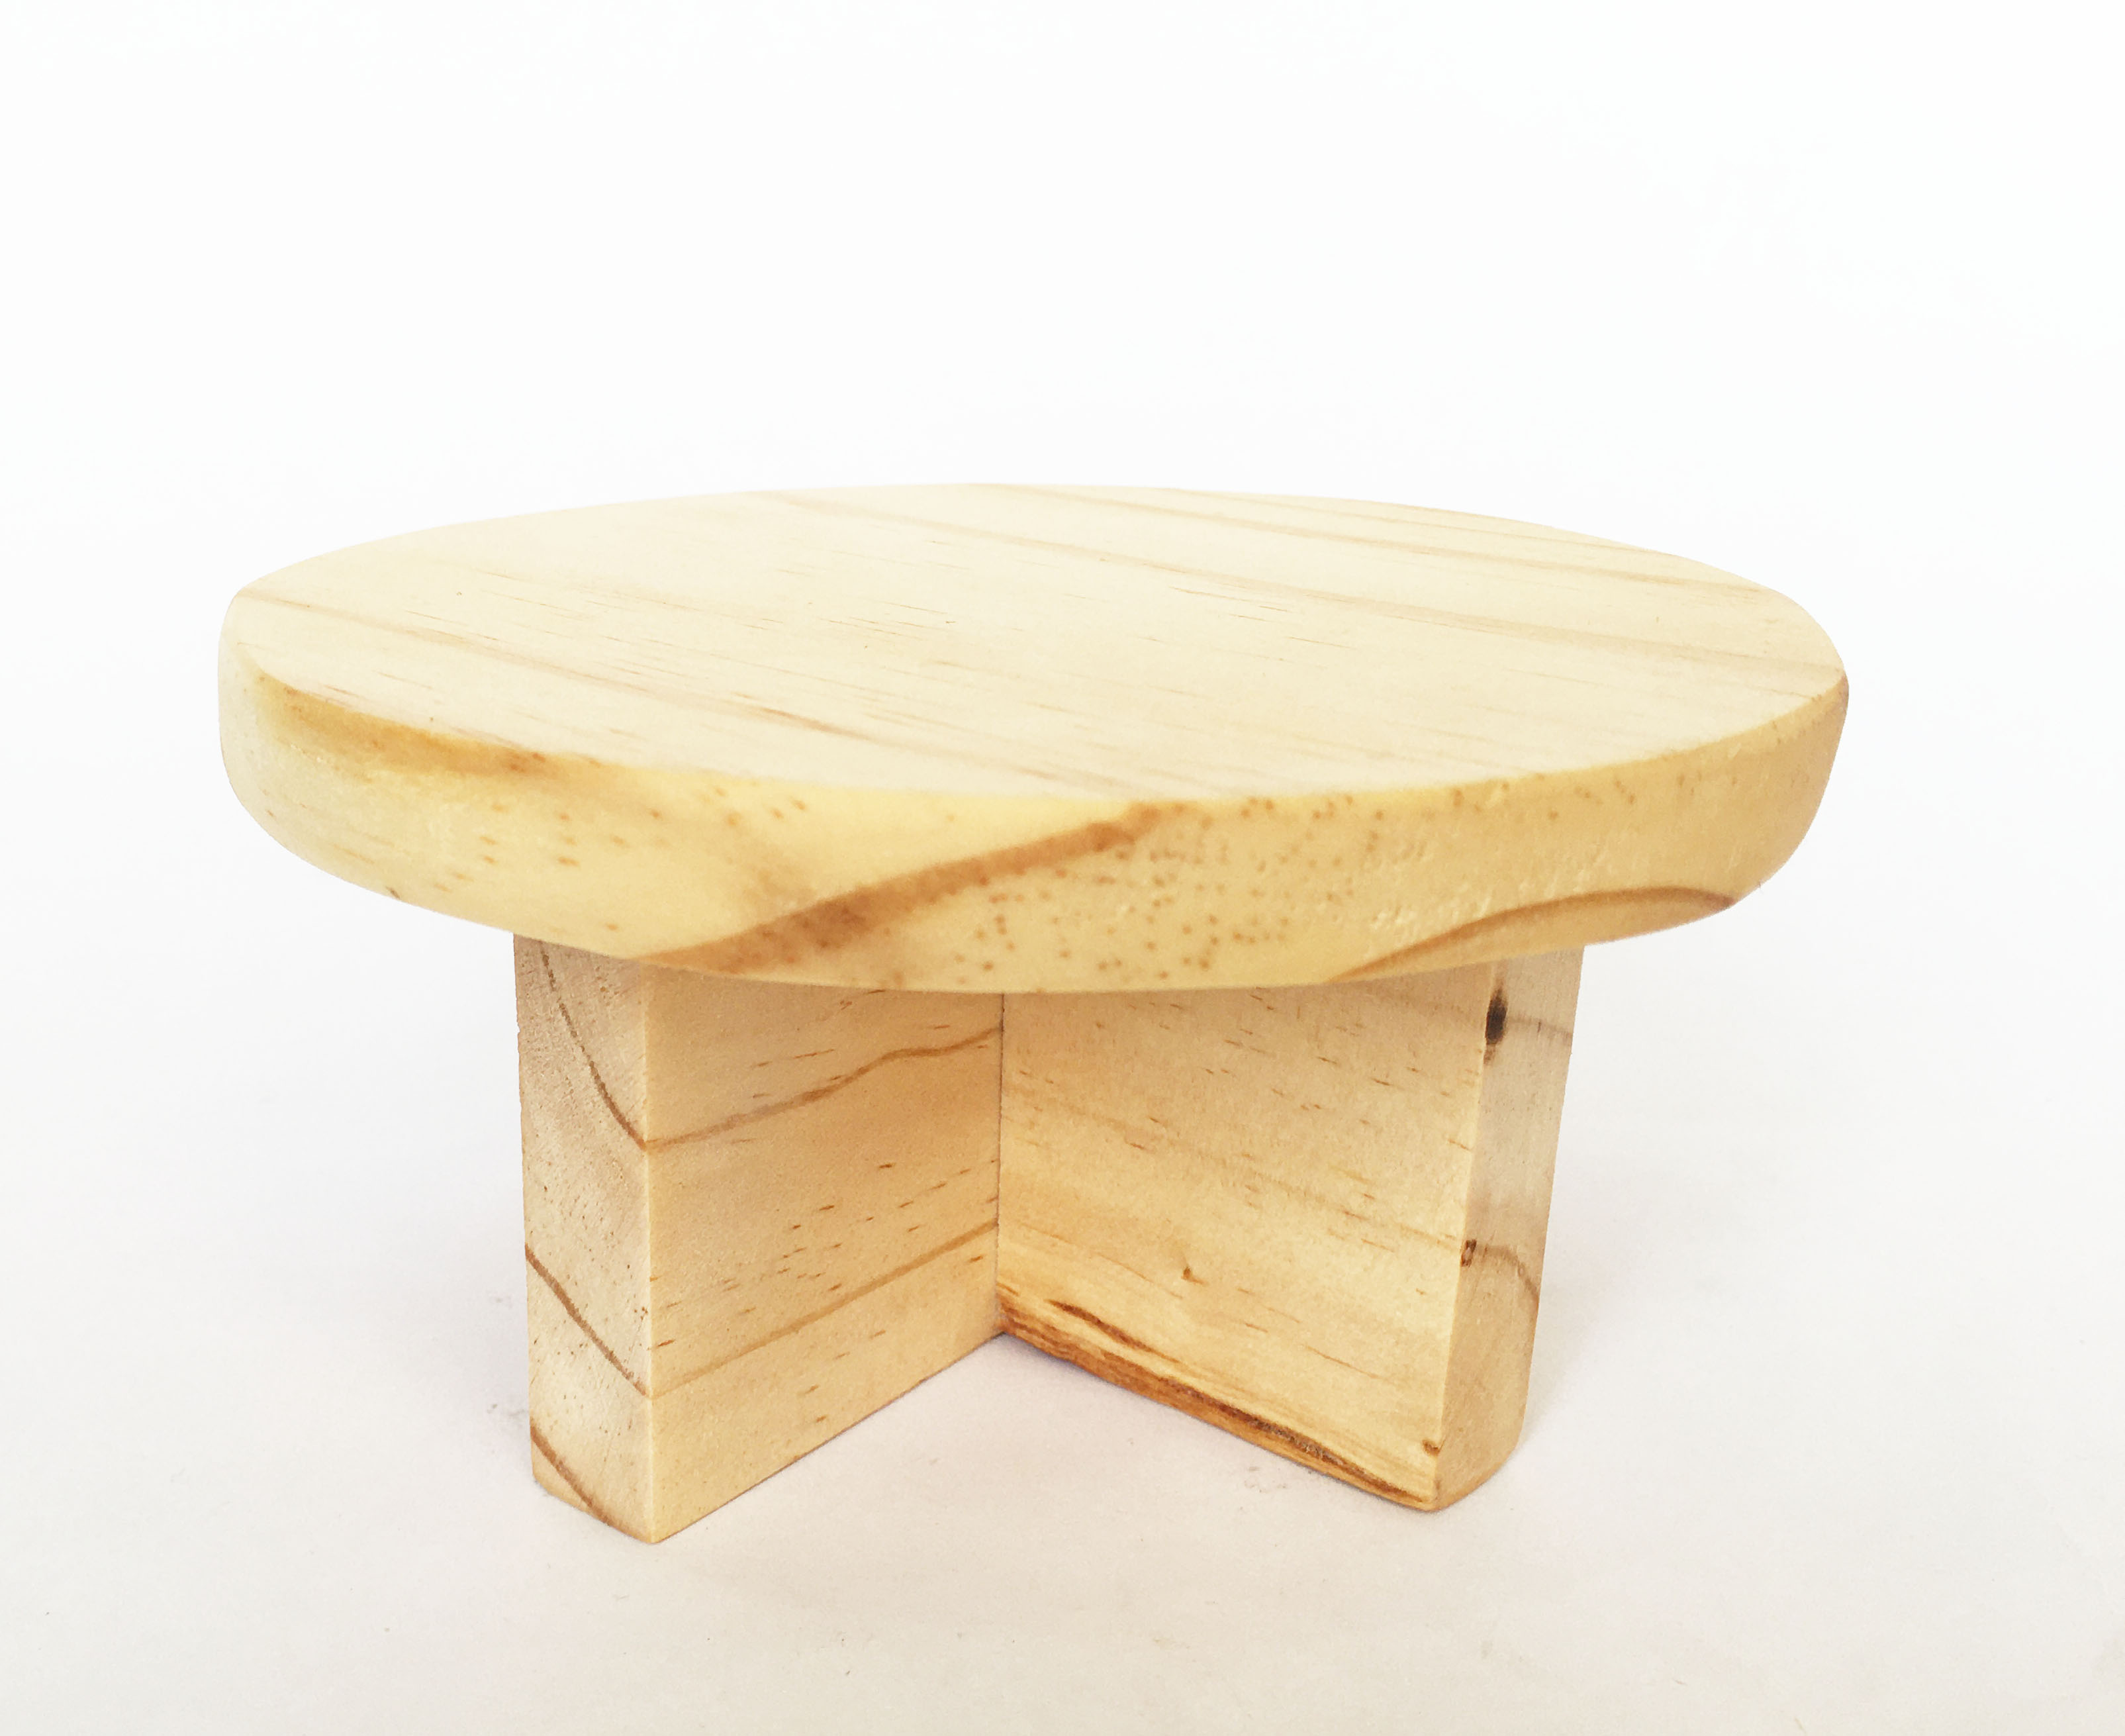 Chân gỗ , Đôn gỗ, bàn tròn mini từ gỗ thông dùng kê chậu, trang trí, decor (10x6cm, 12.5x7cm)